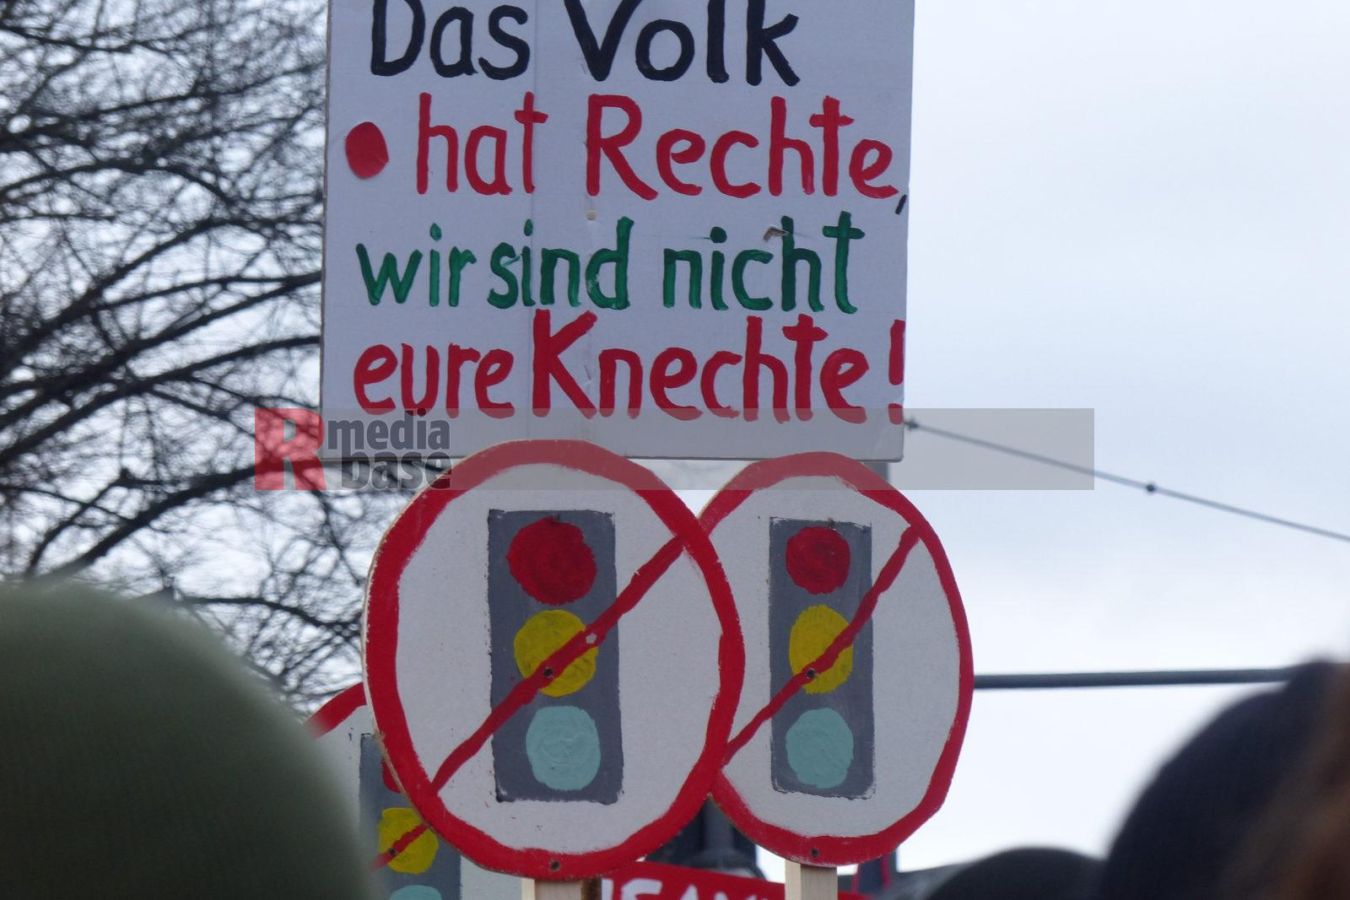 Bauernprotest in Berlin <i>Bild Denner/R-mediabase</i> <br><a href=/confor2/?bld=79038&pst=78995&aid=86&i1=Denner/R-mediabase>Download Bild 79038</a>  <br><a href=/?p=78995>Zum Beitrag 78995</a>